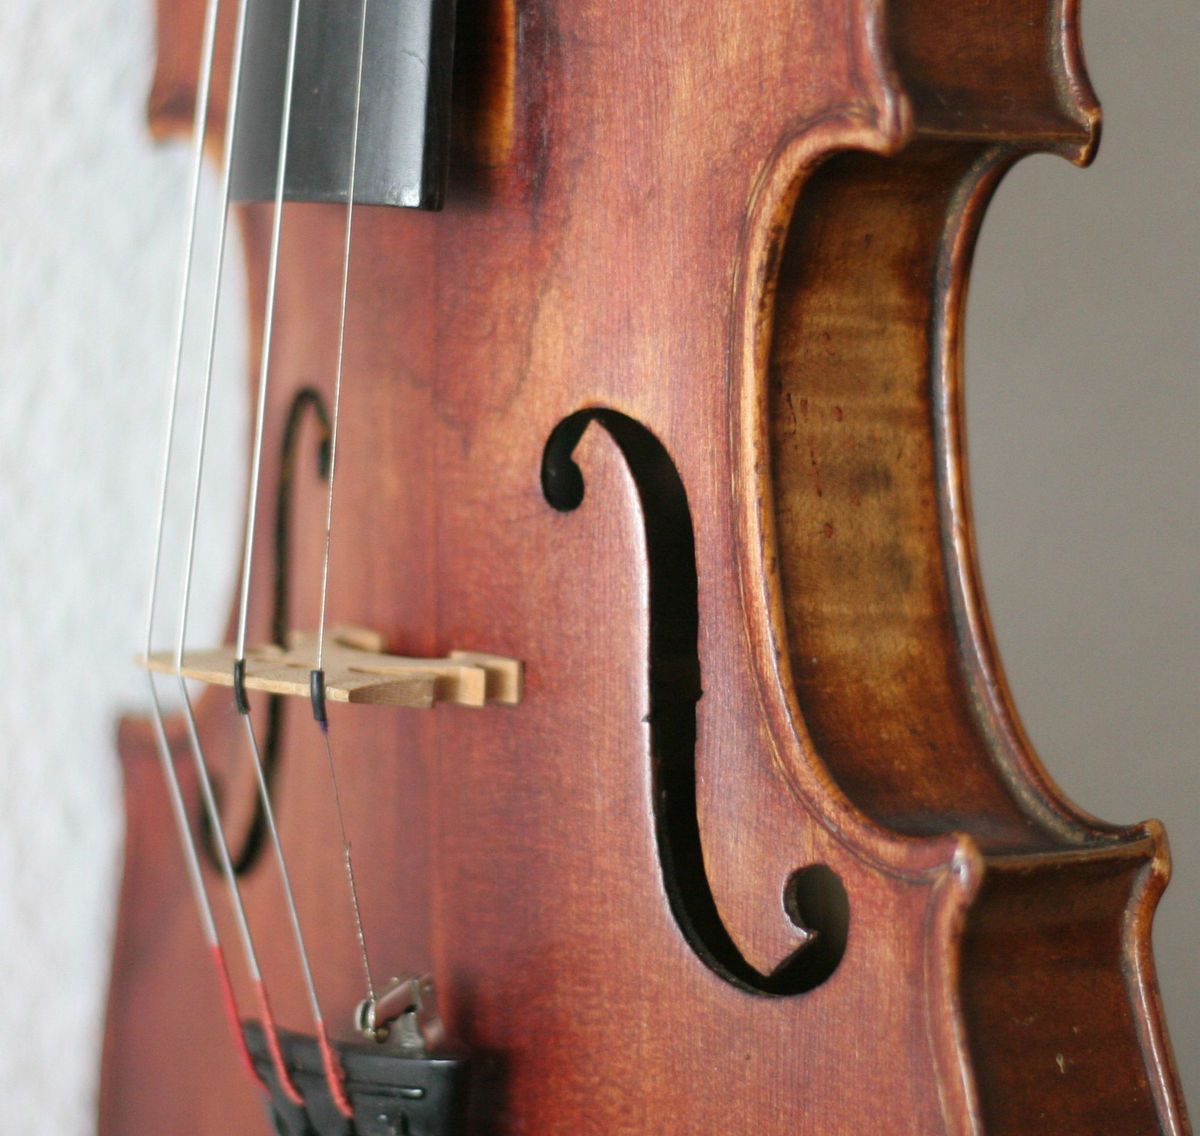   violin 4 4 geige viola cello fiddle violine fullsize ALBIN BAUMGARTEL